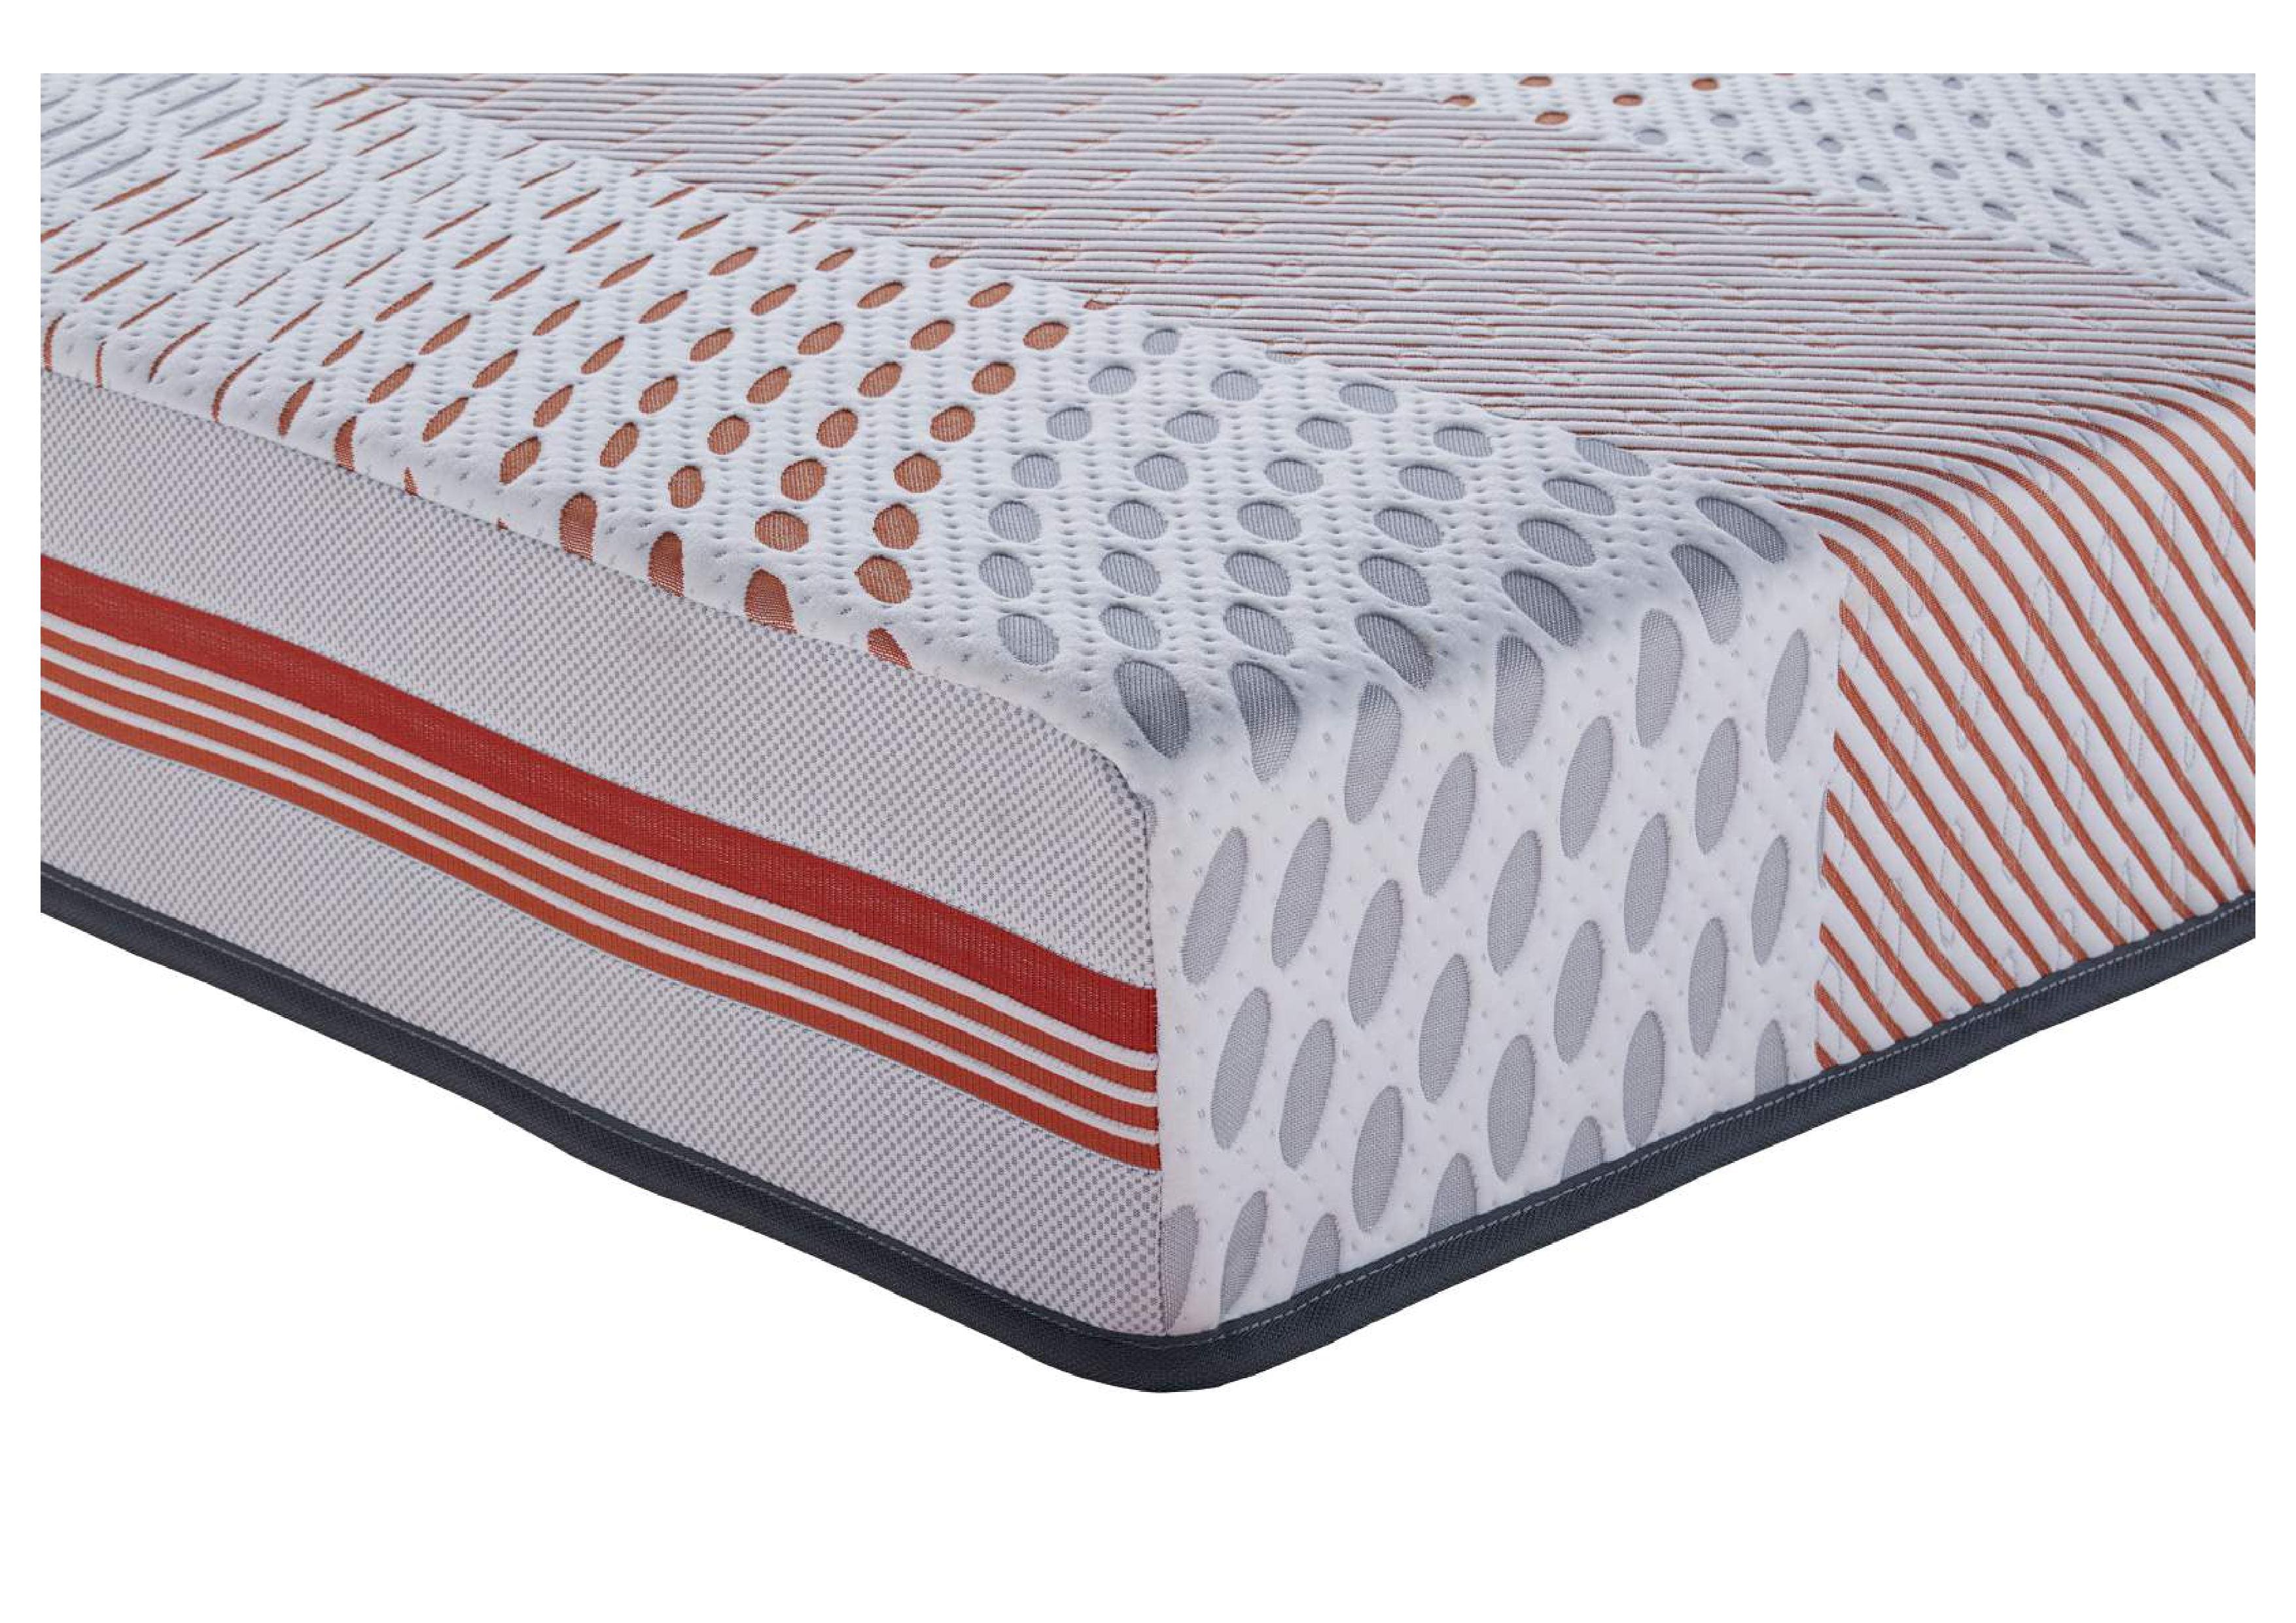 40 x 72 foam mattress